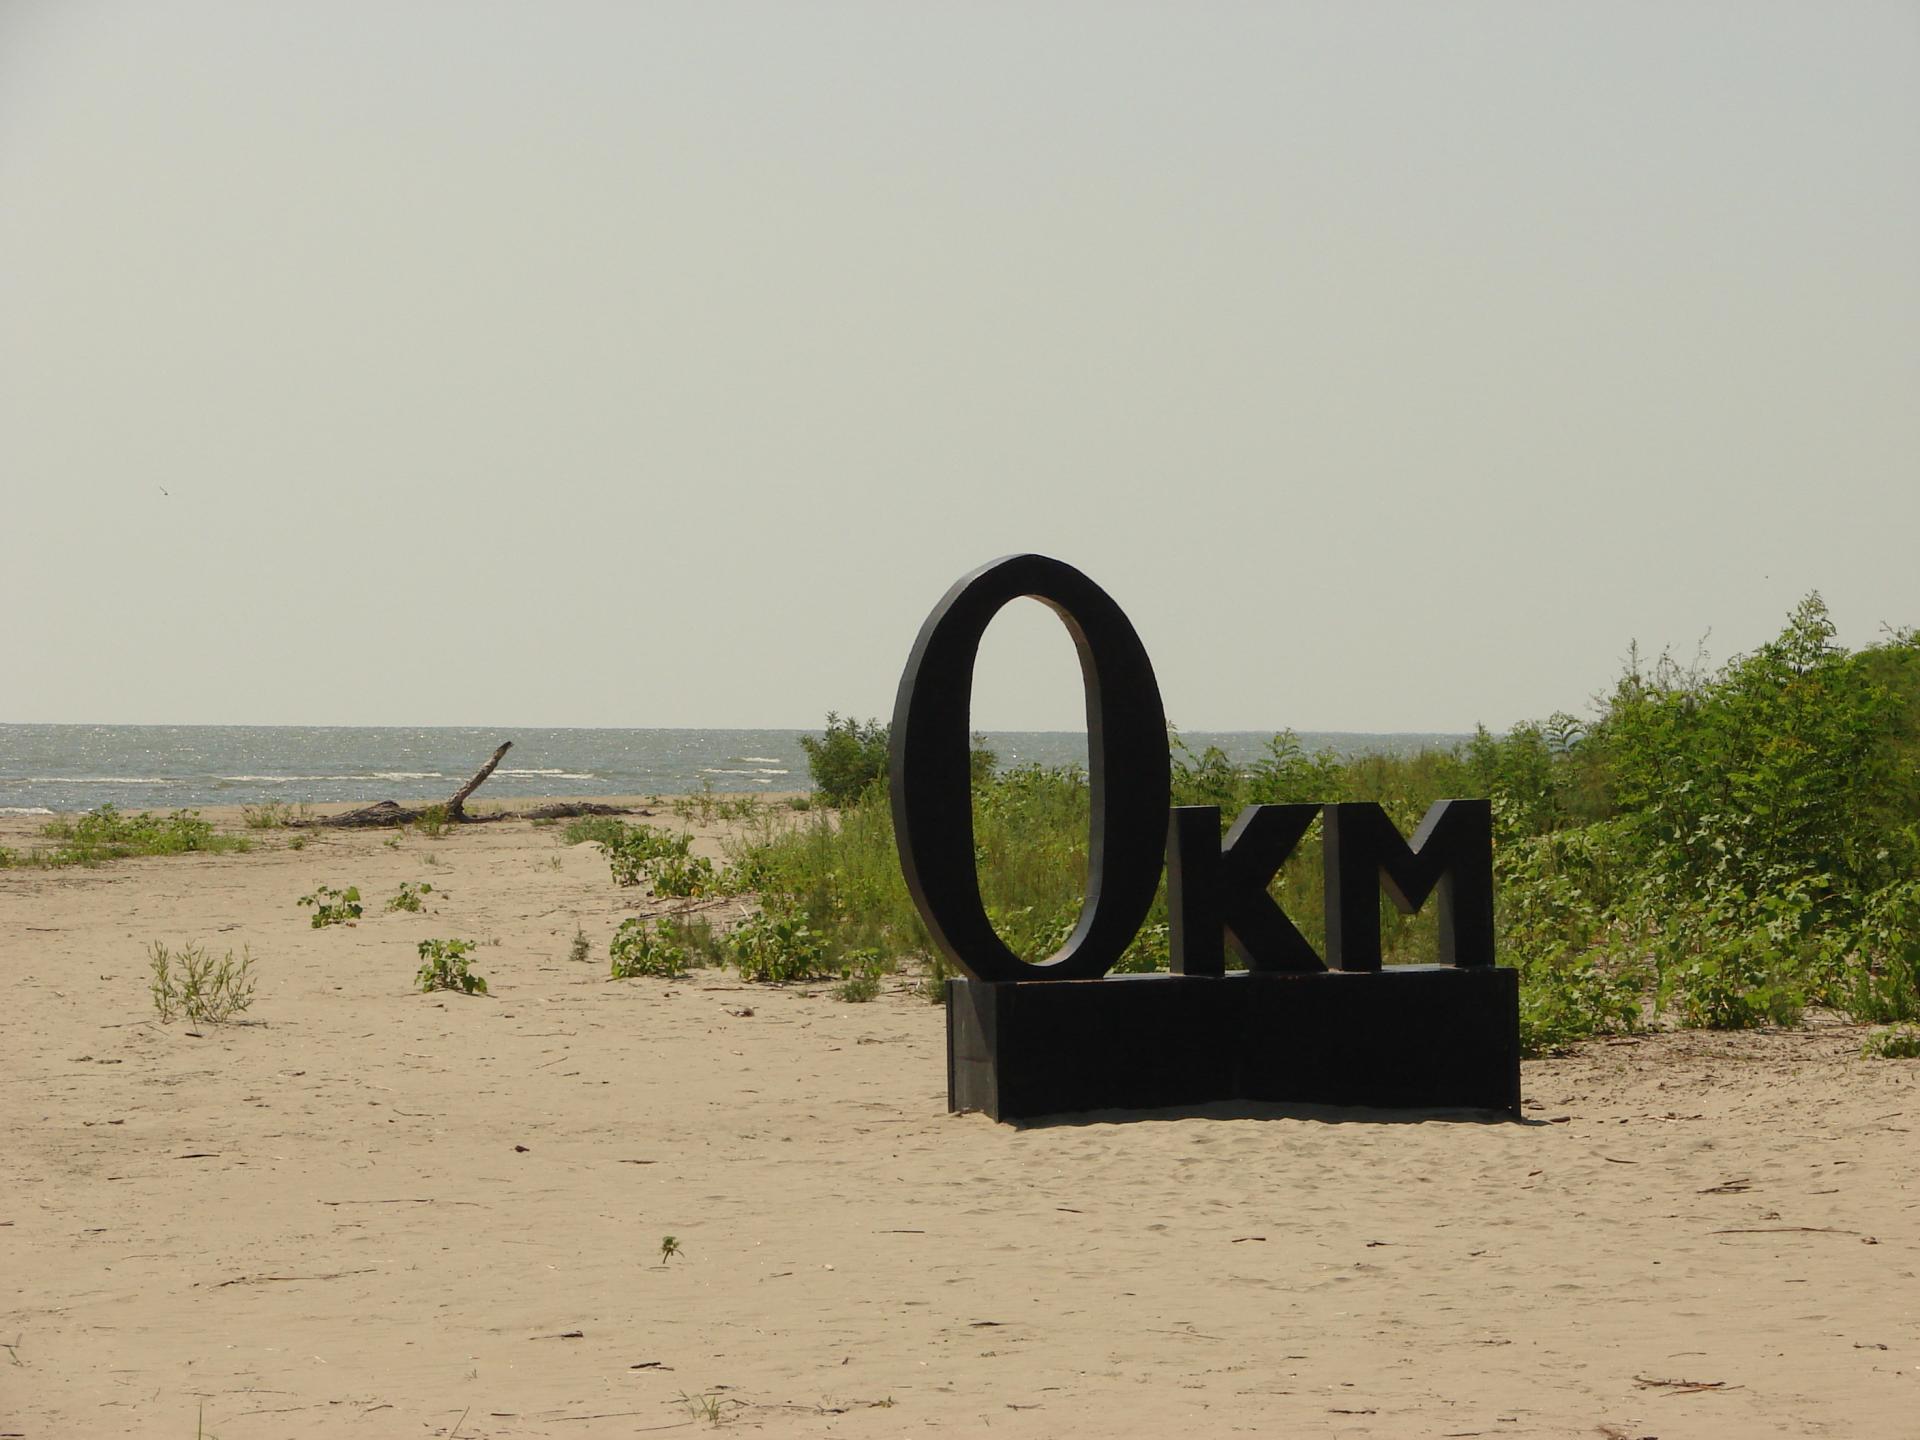 Vilkovo - "Ukrainisches Venedig" in der Region Odessa?